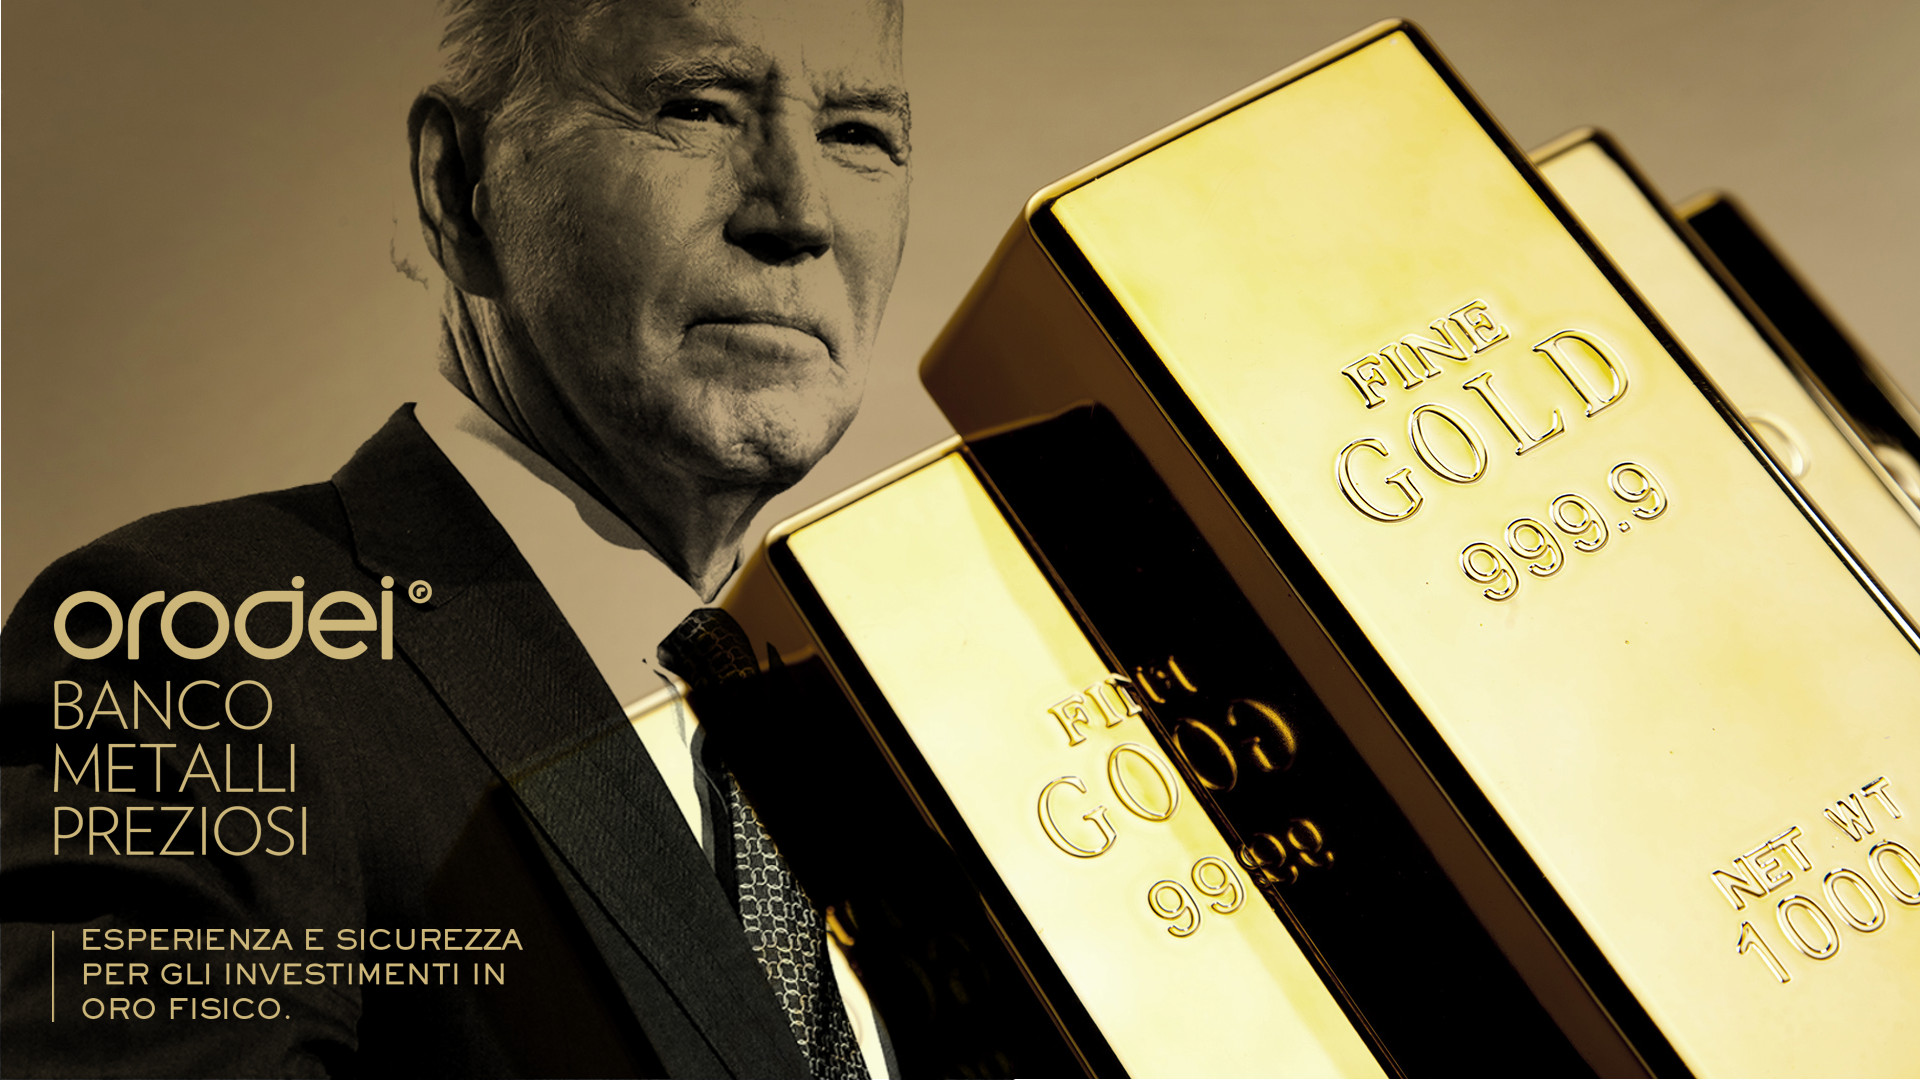 Orodei Banco Metalli Preziosi: Possibili Reazioni del Mercato alla Sostituzione di Biden come Candidato Democratico ed Implicazioni per il Prezzo dell’Oro